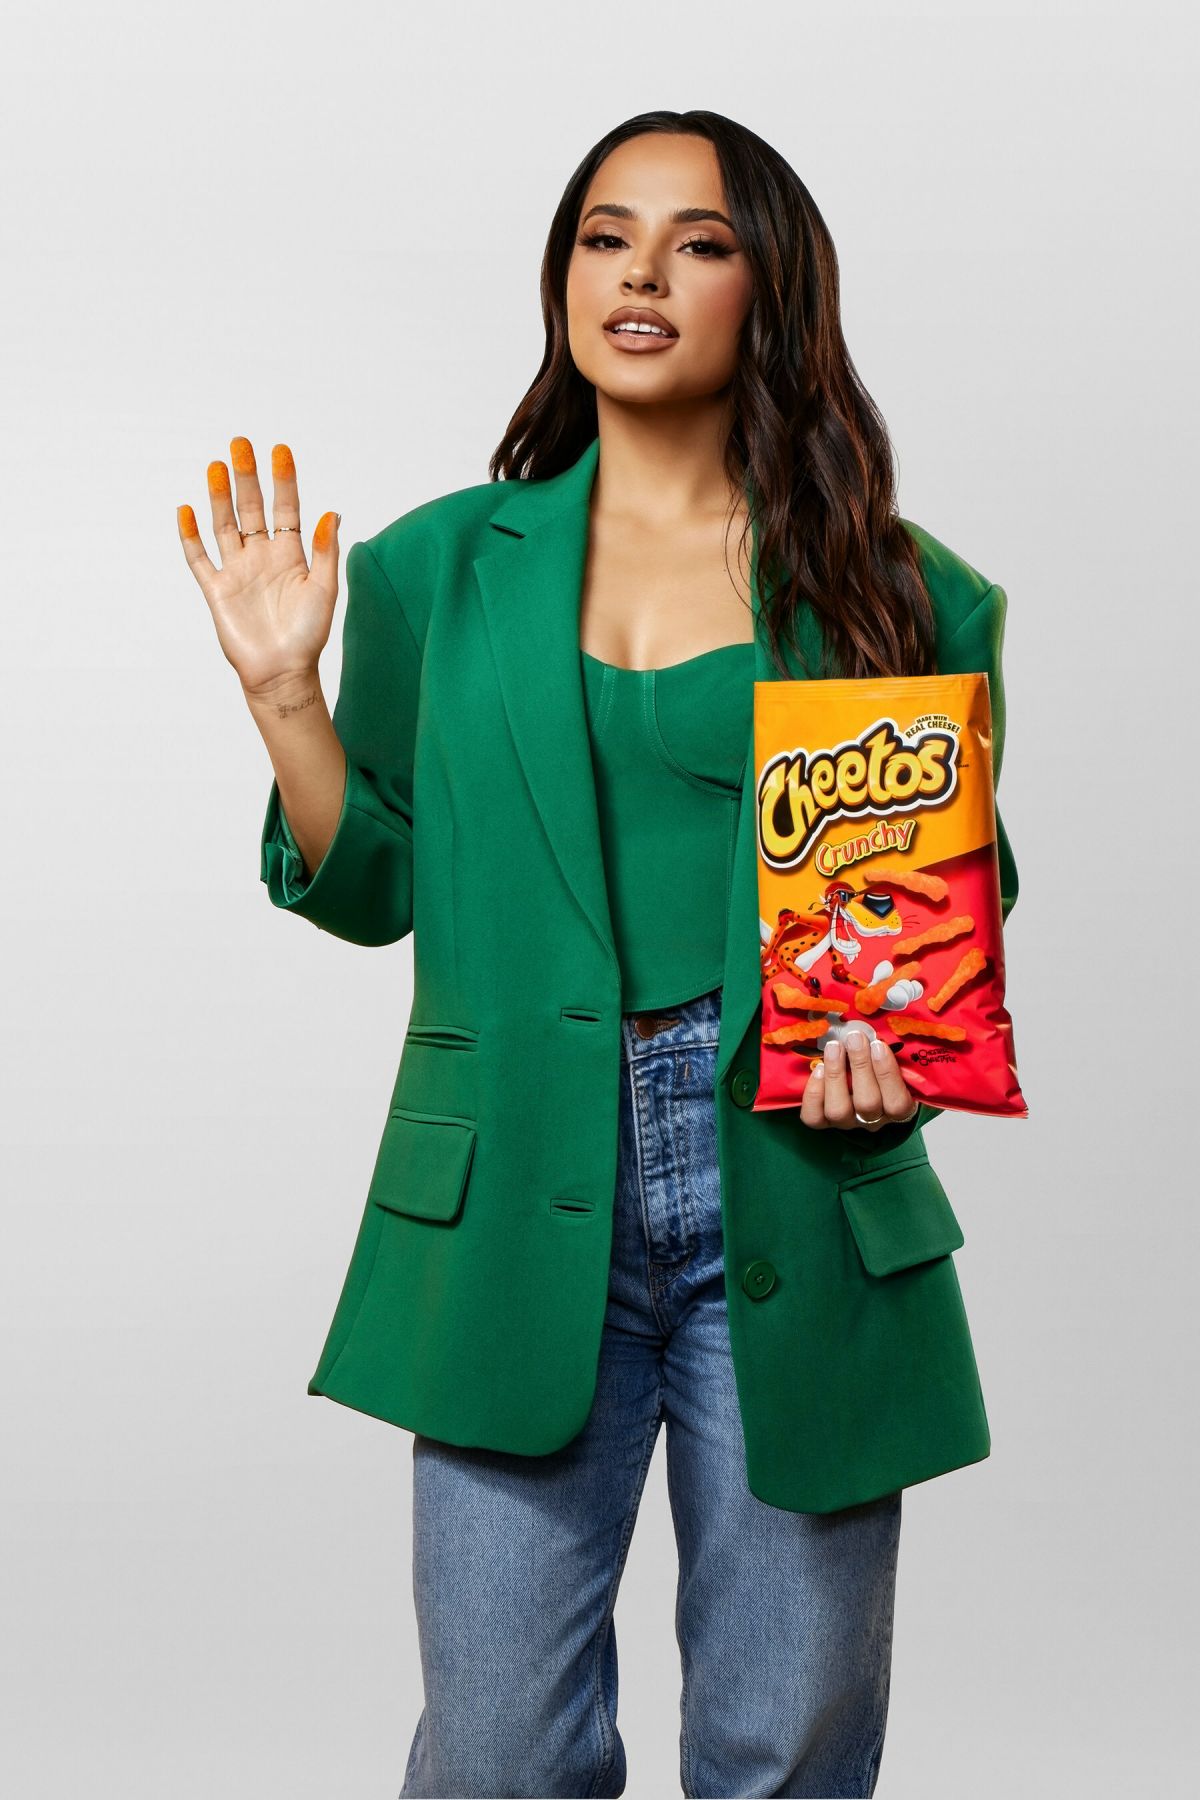 Becky G for Cheetos Deja Tu Huella Campaign 07/17/2023